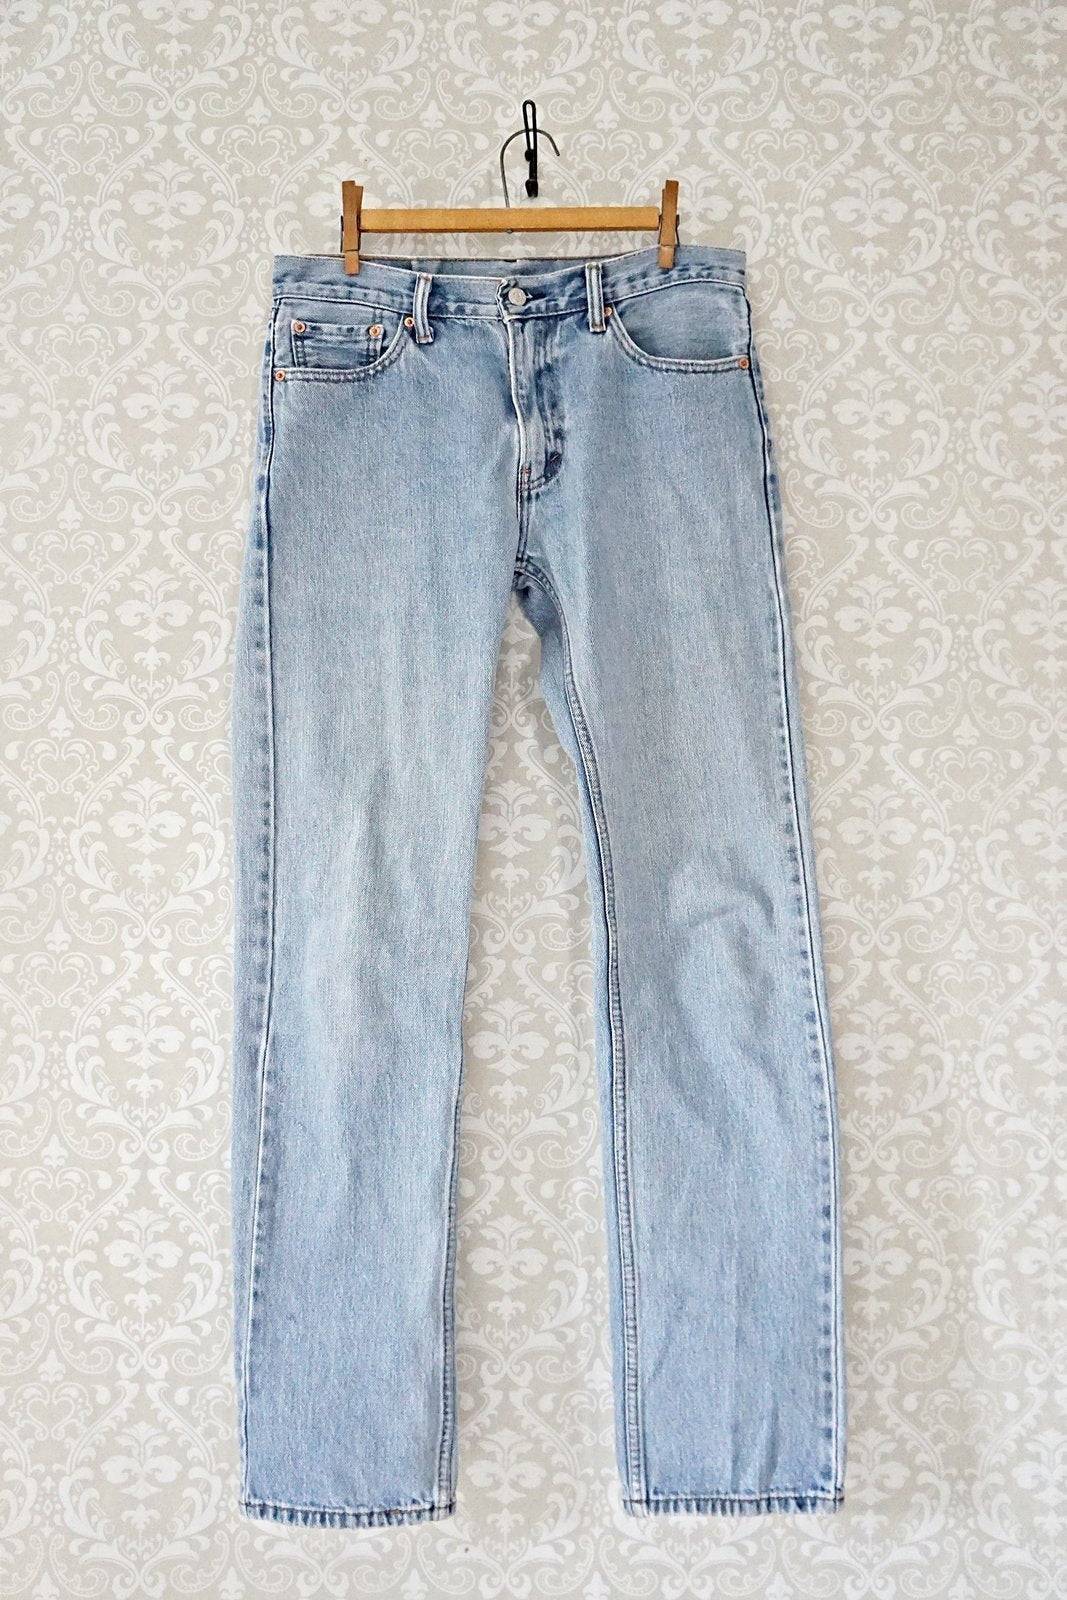 Vintage Levi's 505 Jeans - 33